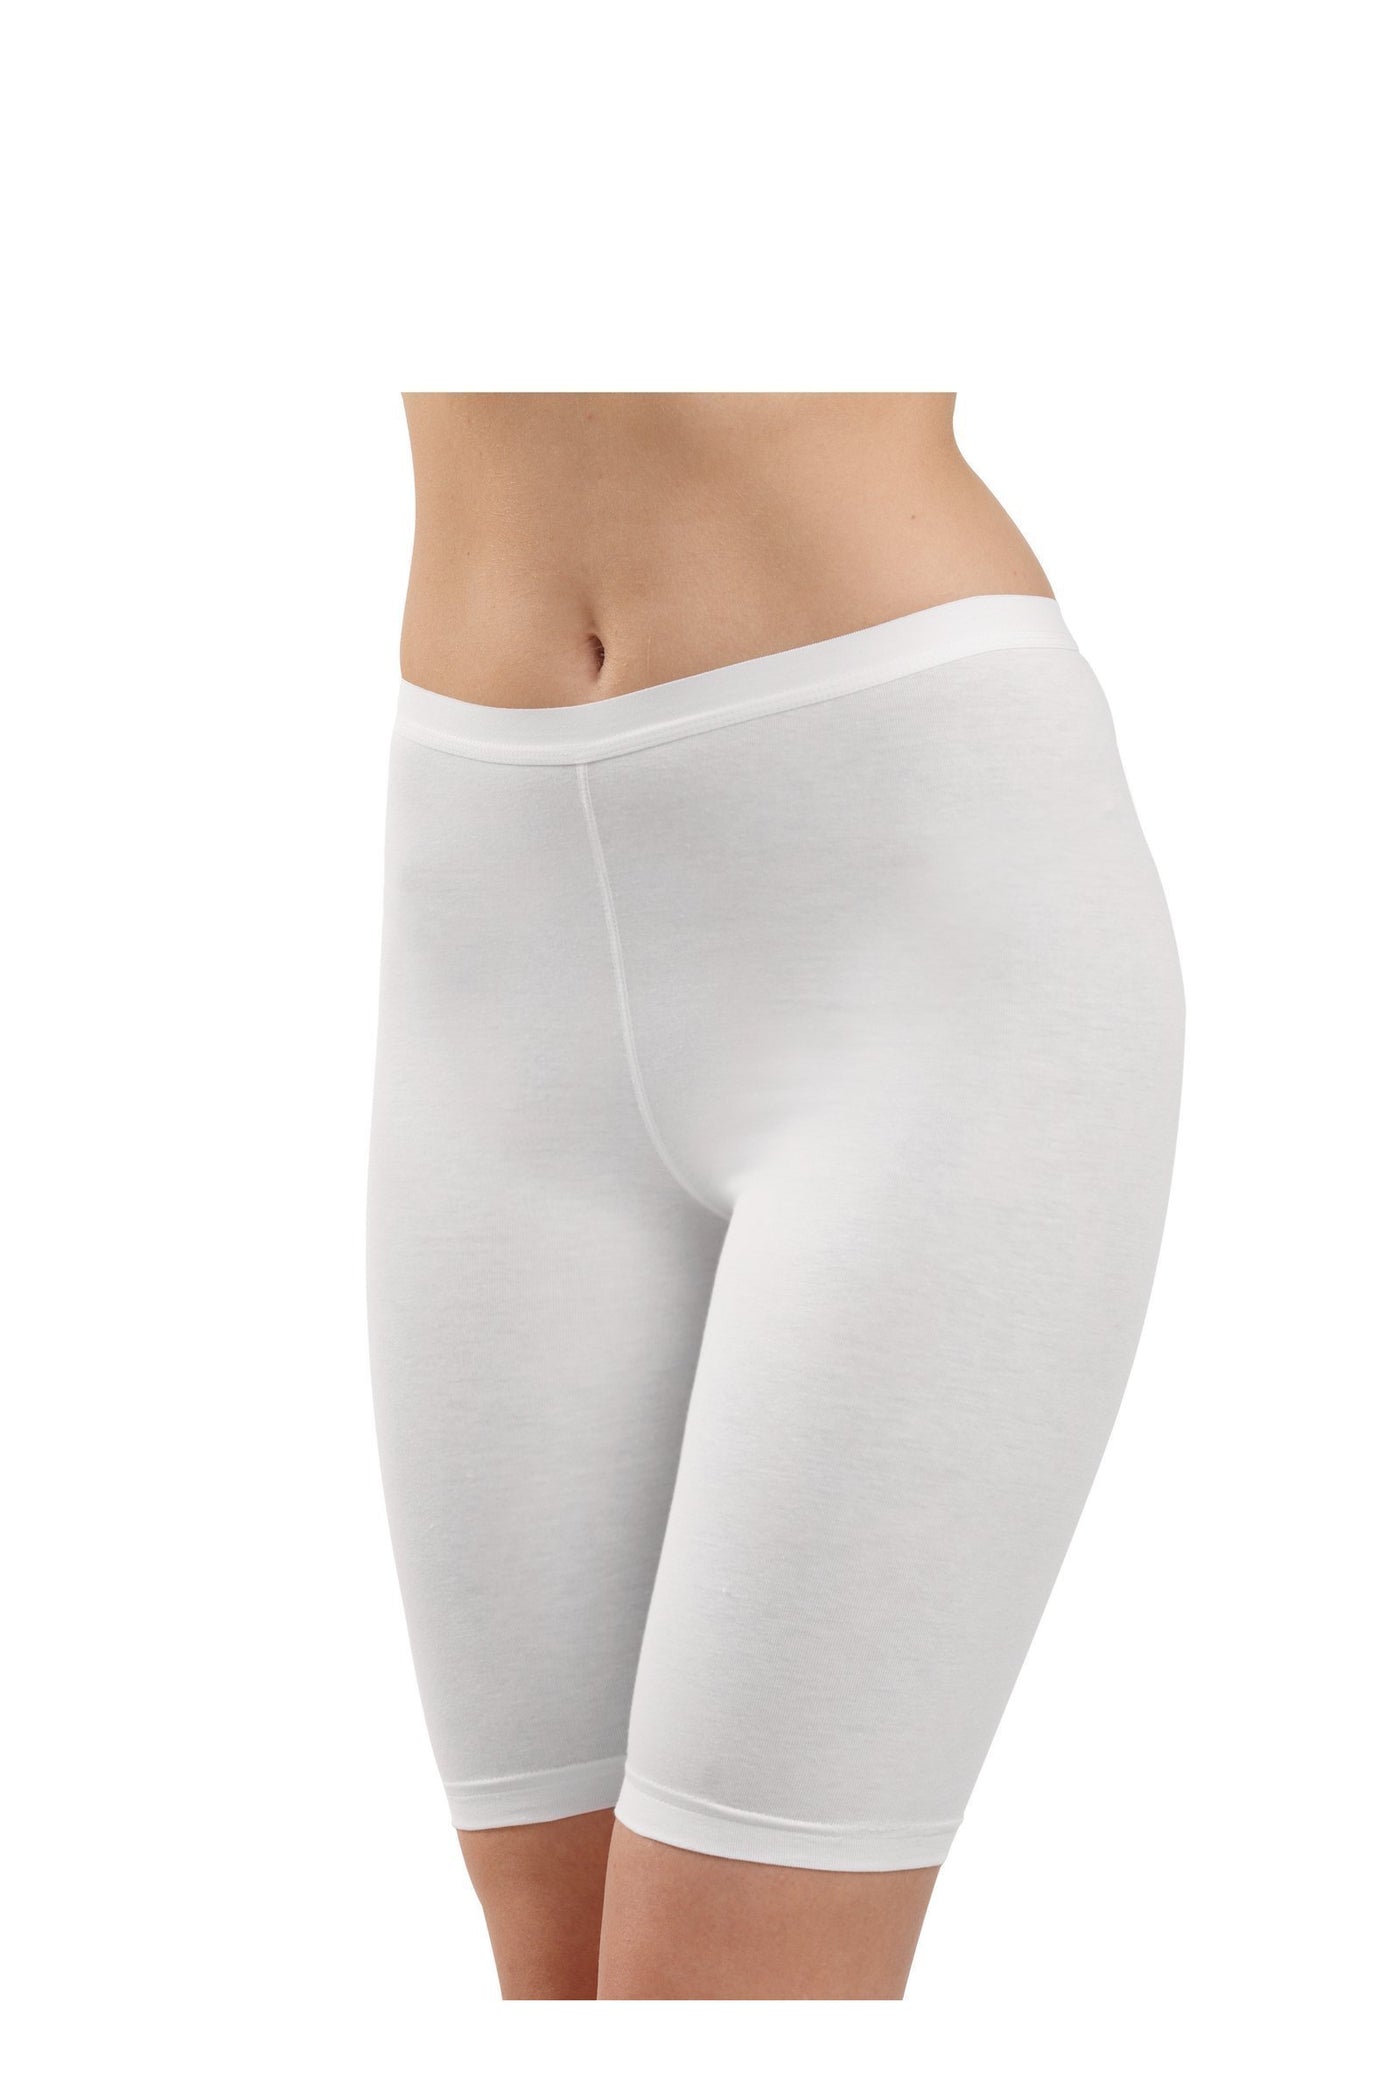 Ladies' long Slip-1309 underwear blackspade White L 94% Cotton 6% Elastane